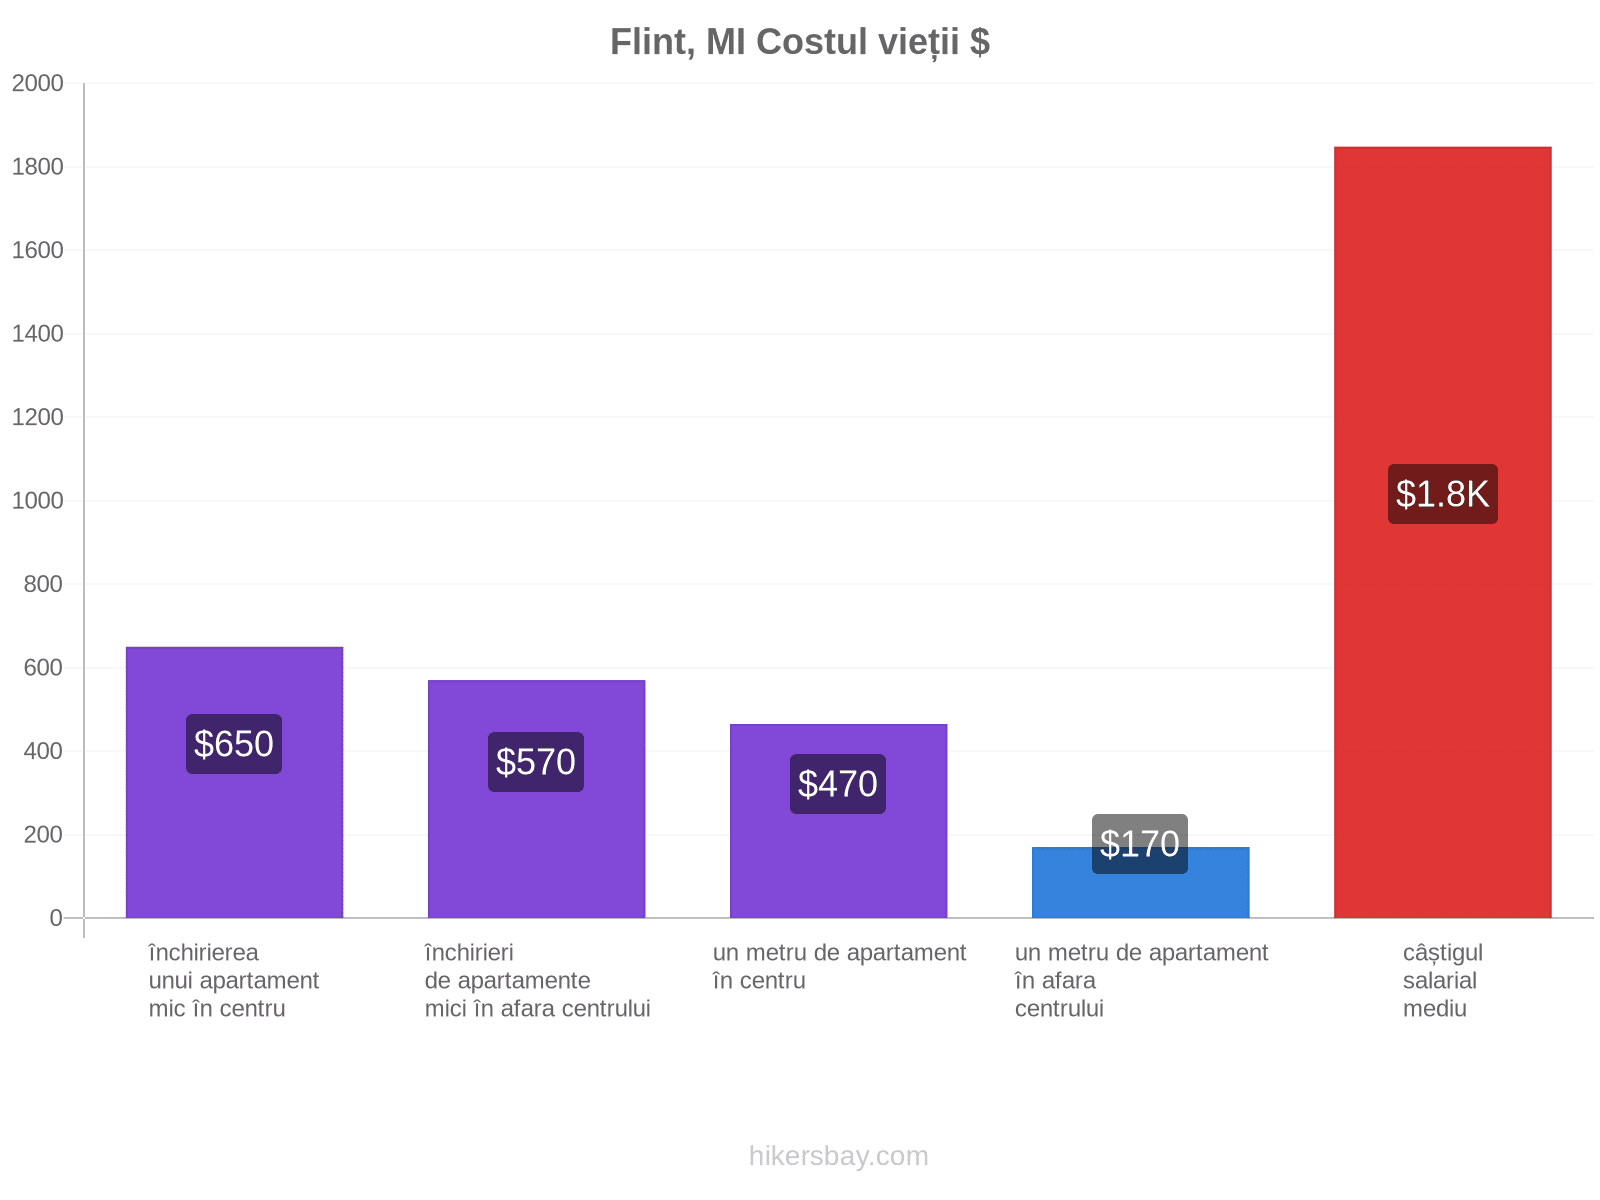 Flint, MI costul vieții hikersbay.com